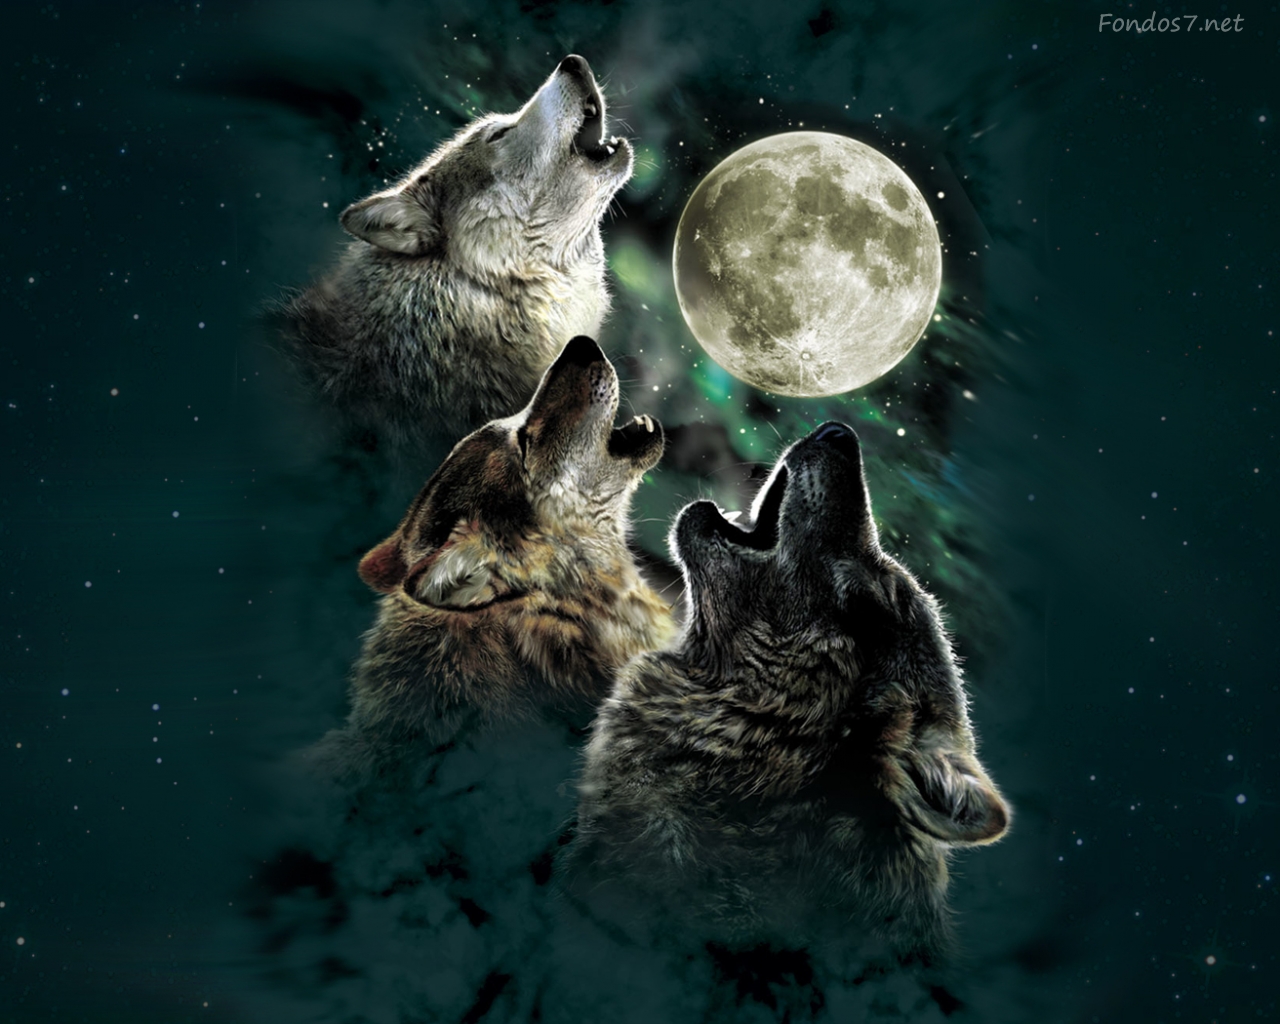 Скачать обои бесплатно Животные, Волк картинка на рабочий стол ПК